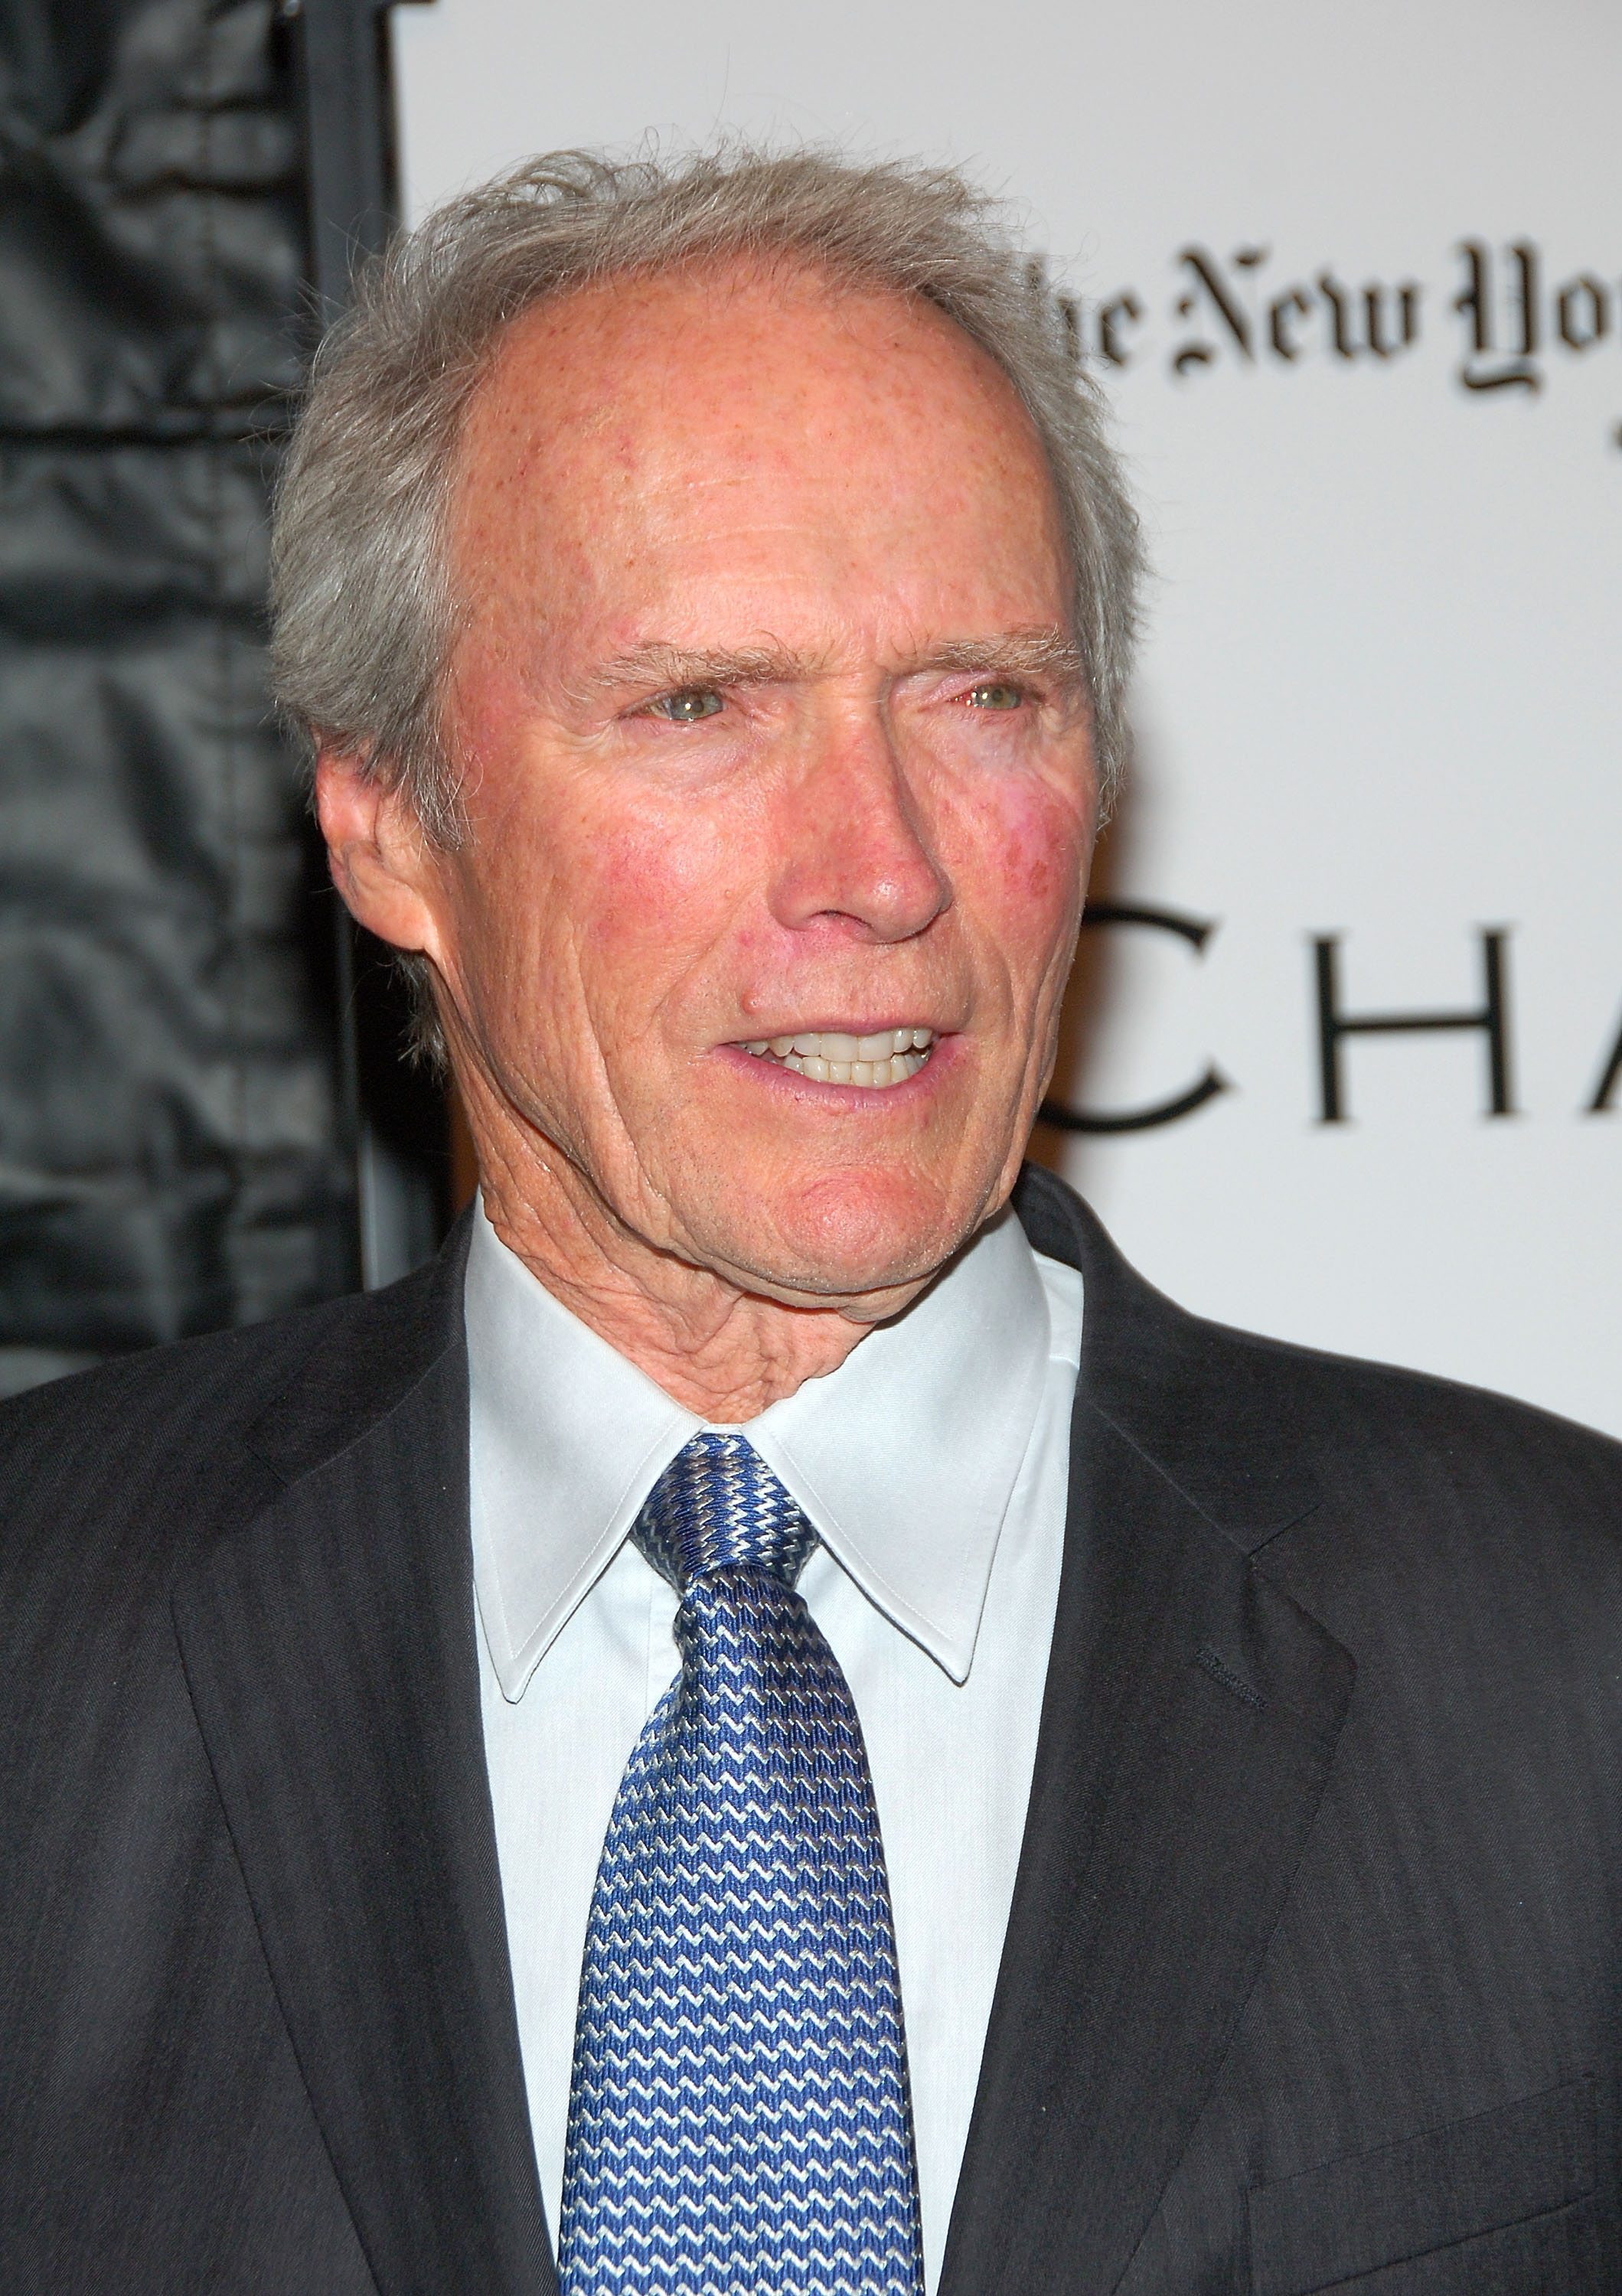 Clint Eastwood asiste al estreno de "The Changeling" en el Teatro Ziegfeld el 4 de octubre de 2008 en Nueva York | Foto: Getty Images